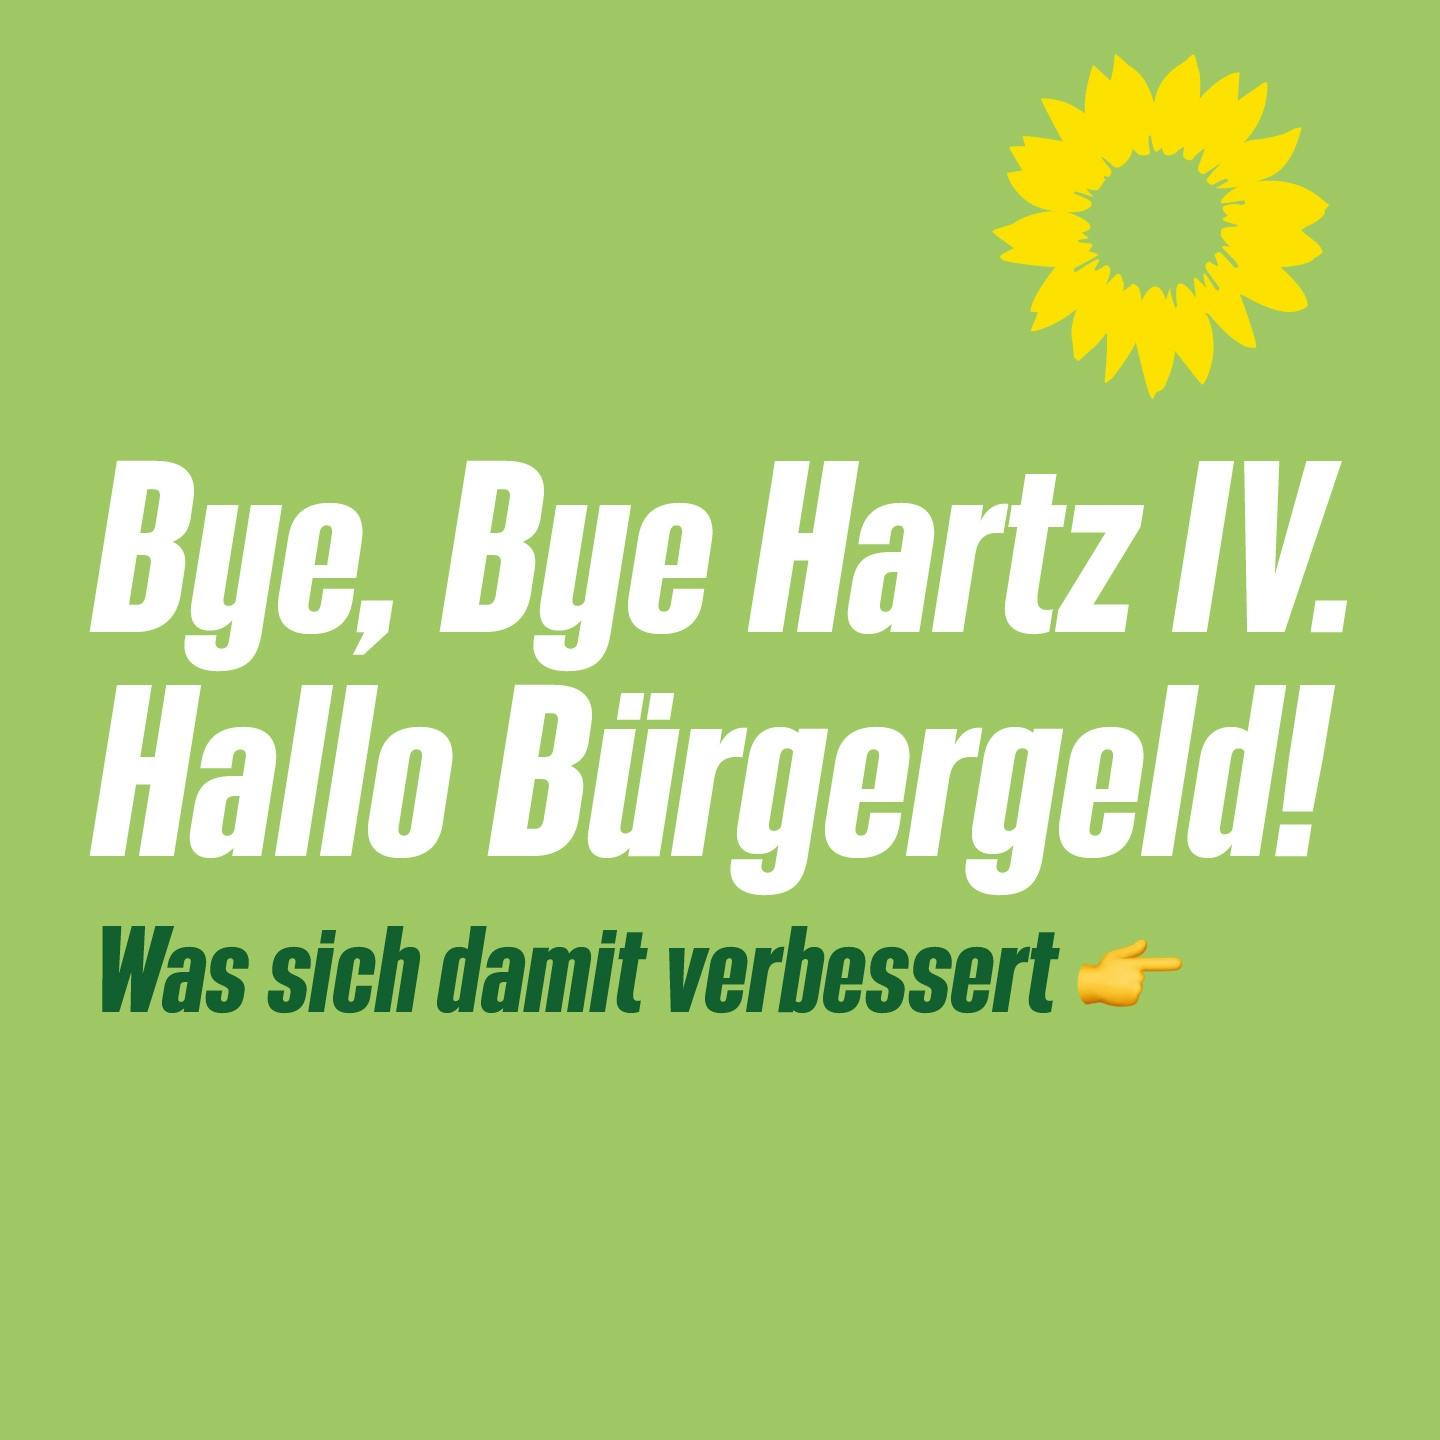 Grafik mit Aufschrift: "Bye, bye Hartz IV! Hallo Bürgegeld! Was sich damit verbessert""